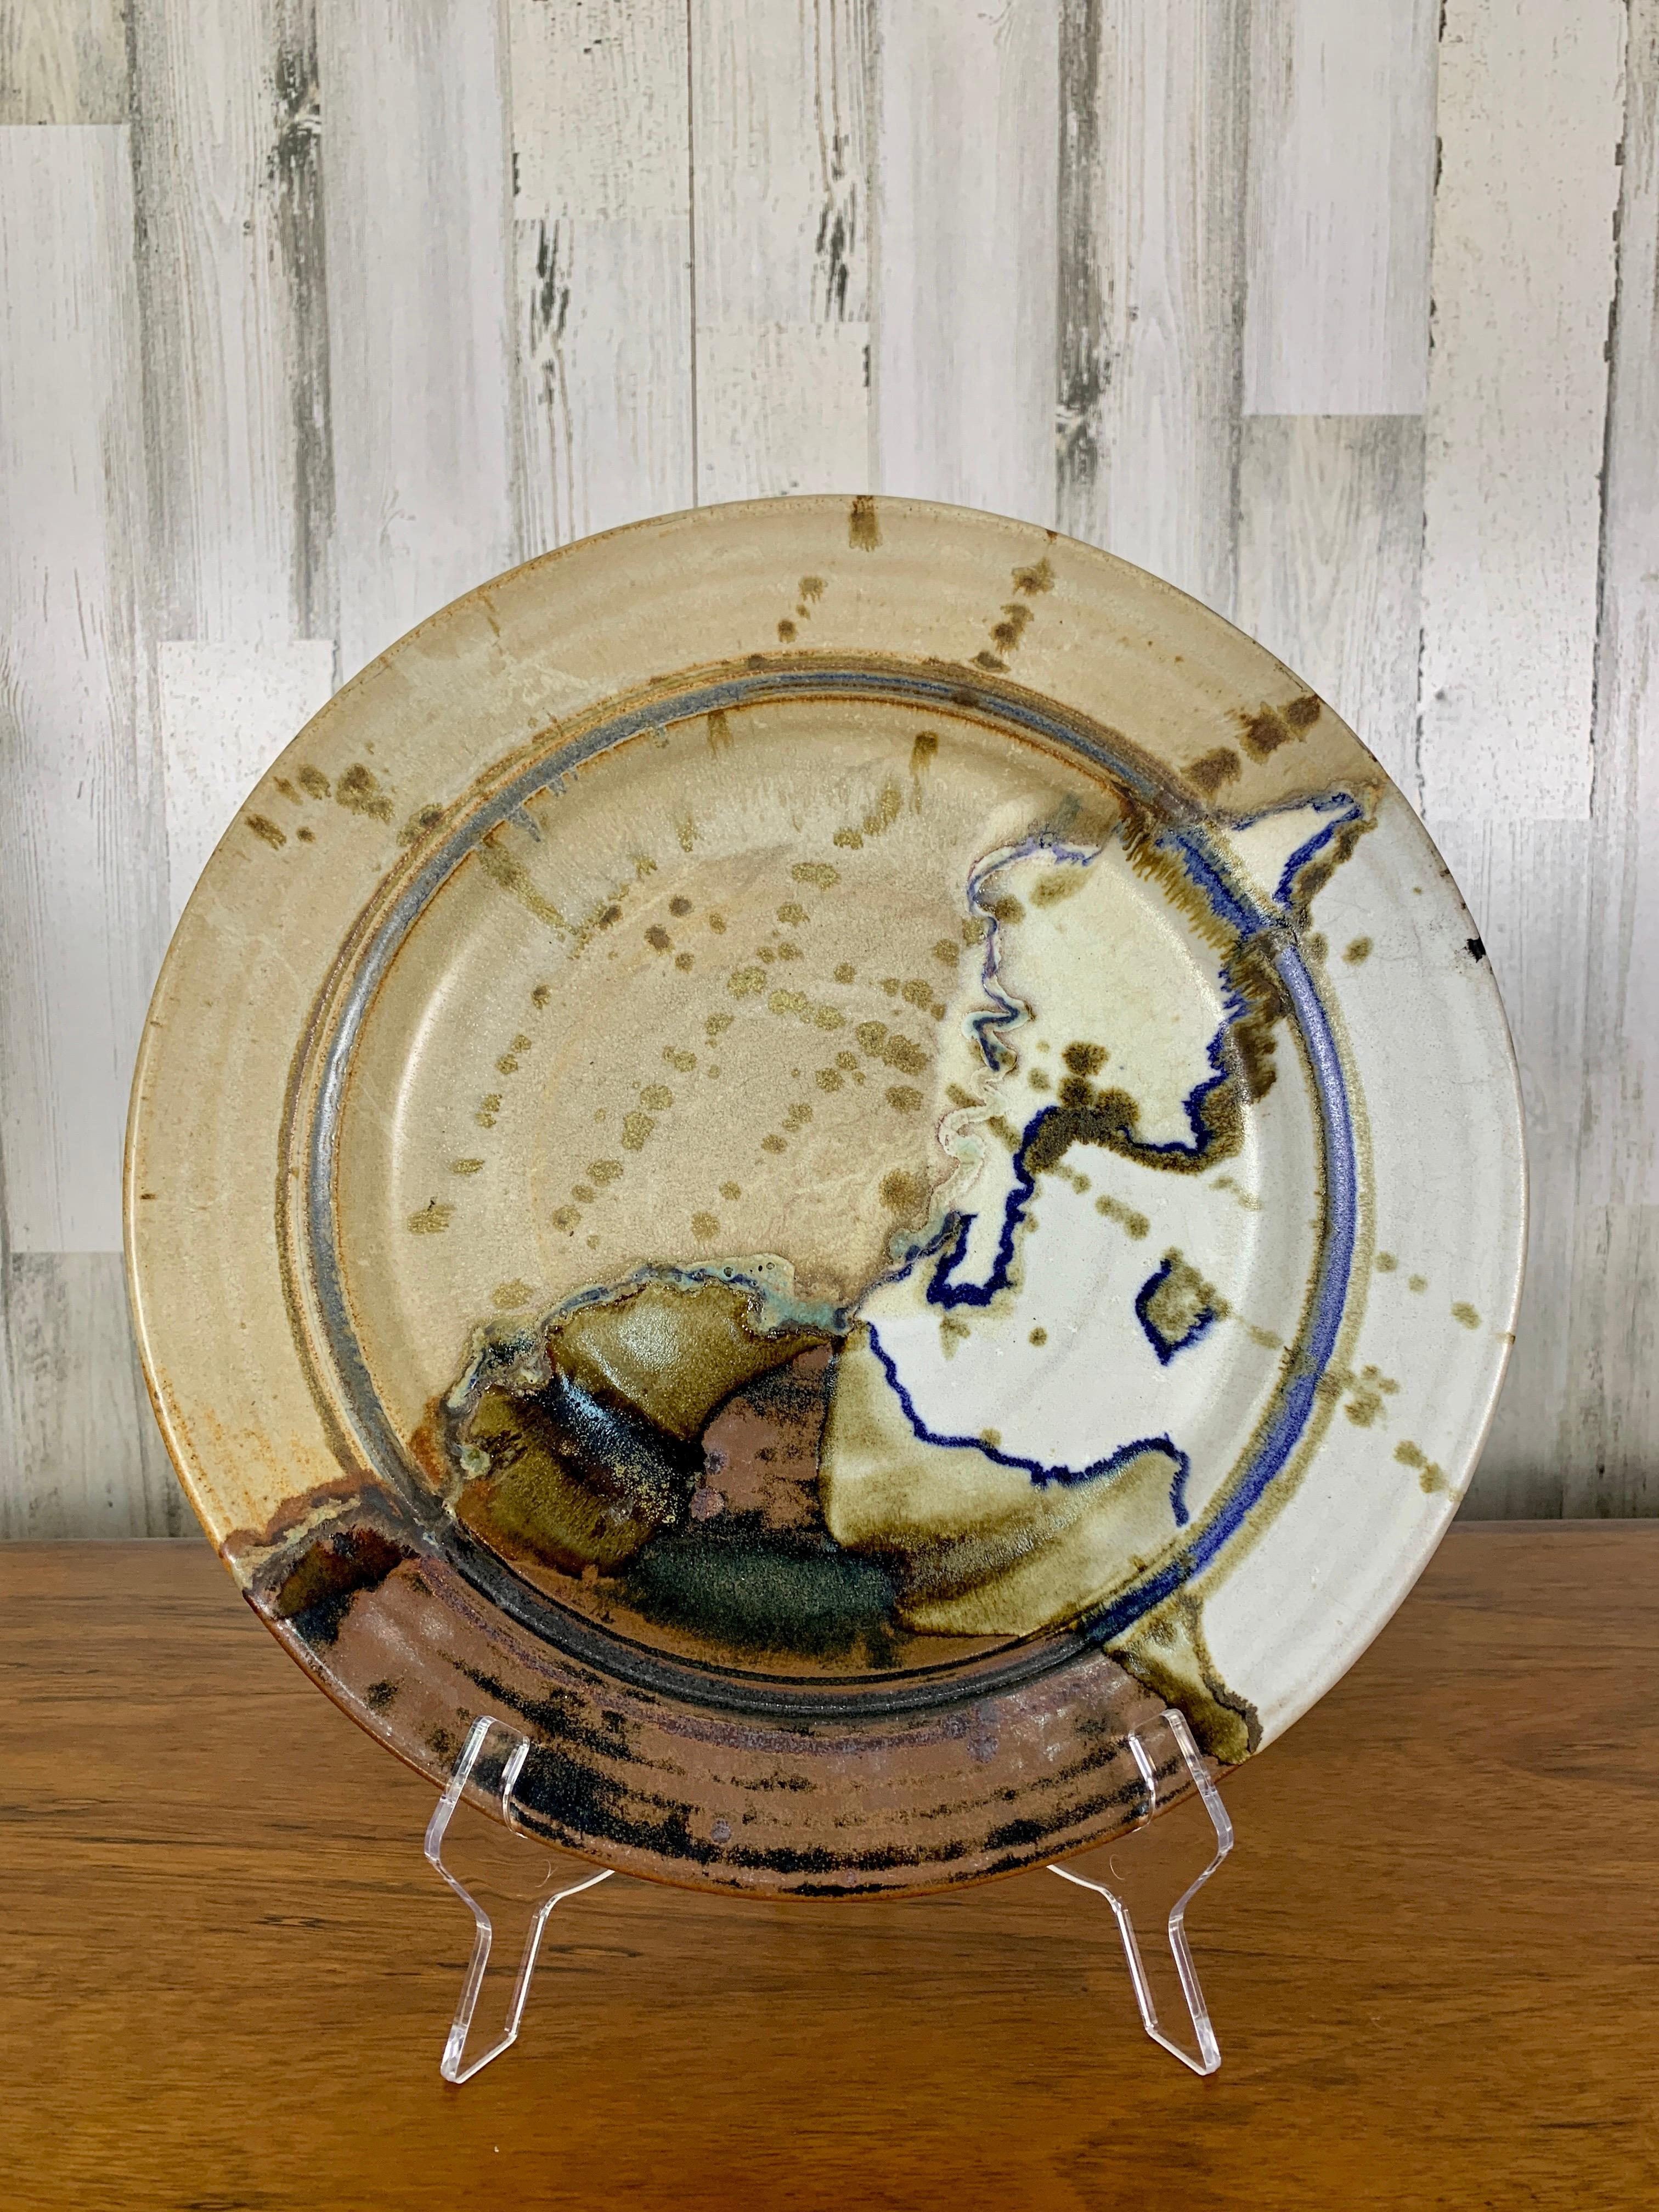 Abstraktes Glasurmuster auf diesem großen, handgefertigten Teller.